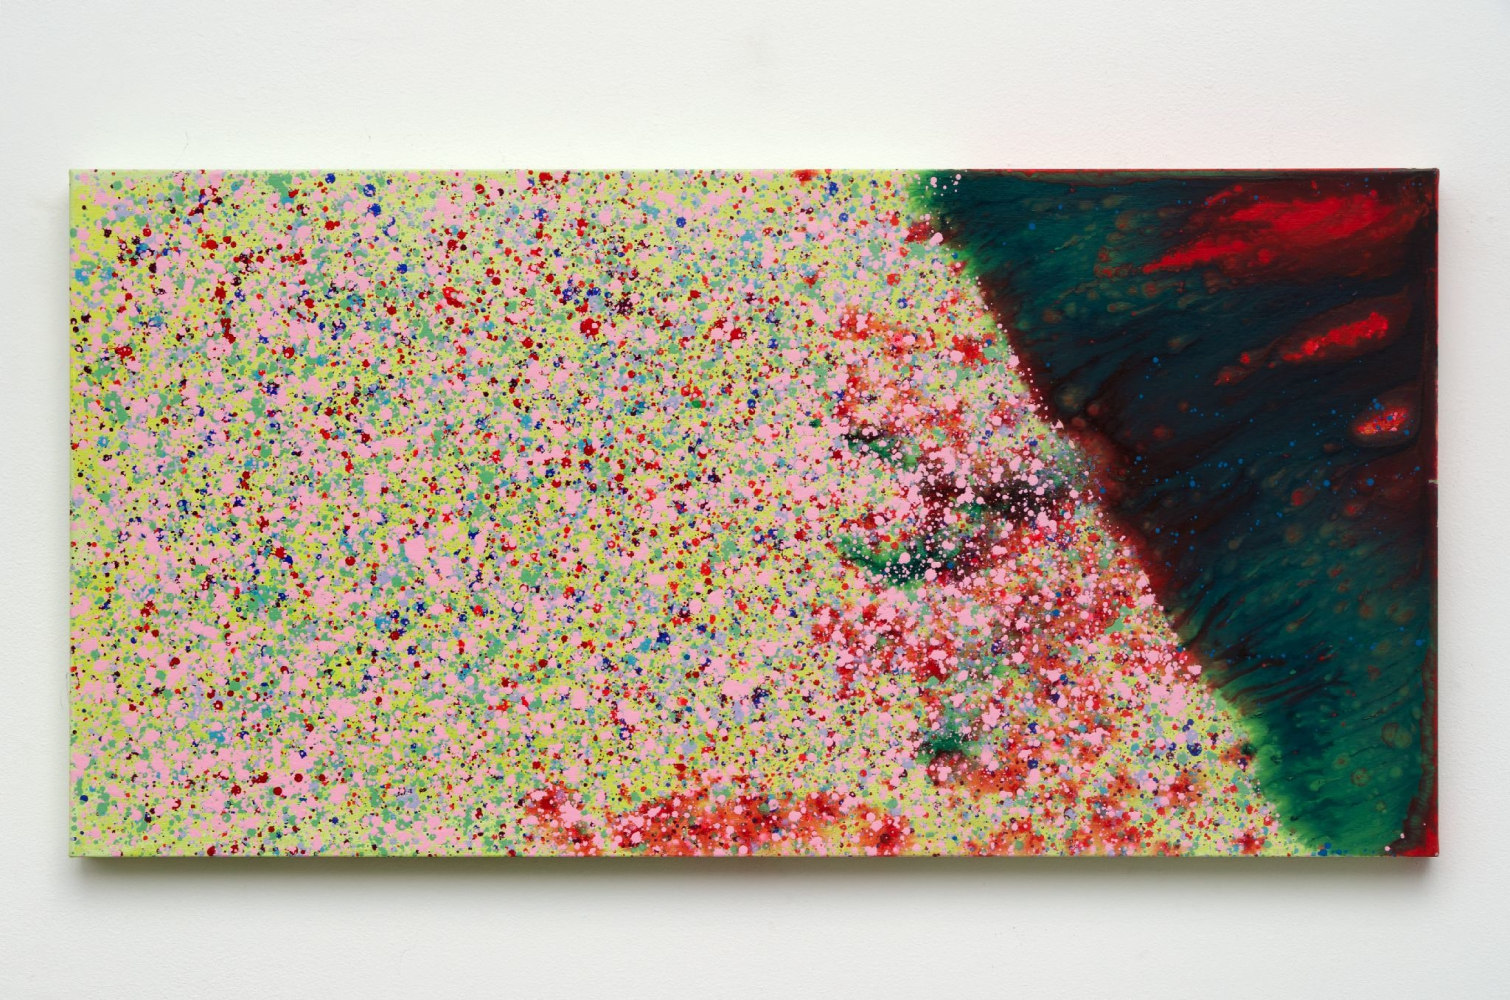 Matsumi Kanemitsu (1922-1992)
Untitled (C), c. 1990s&amp;nbsp;&amp;nbsp;&amp;nbsp;
acrylic on canvas
20 x 40 inches;&amp;nbsp;&amp;nbsp;50.8 x 101.6 centimeters
LSFA# 14004&amp;nbsp;